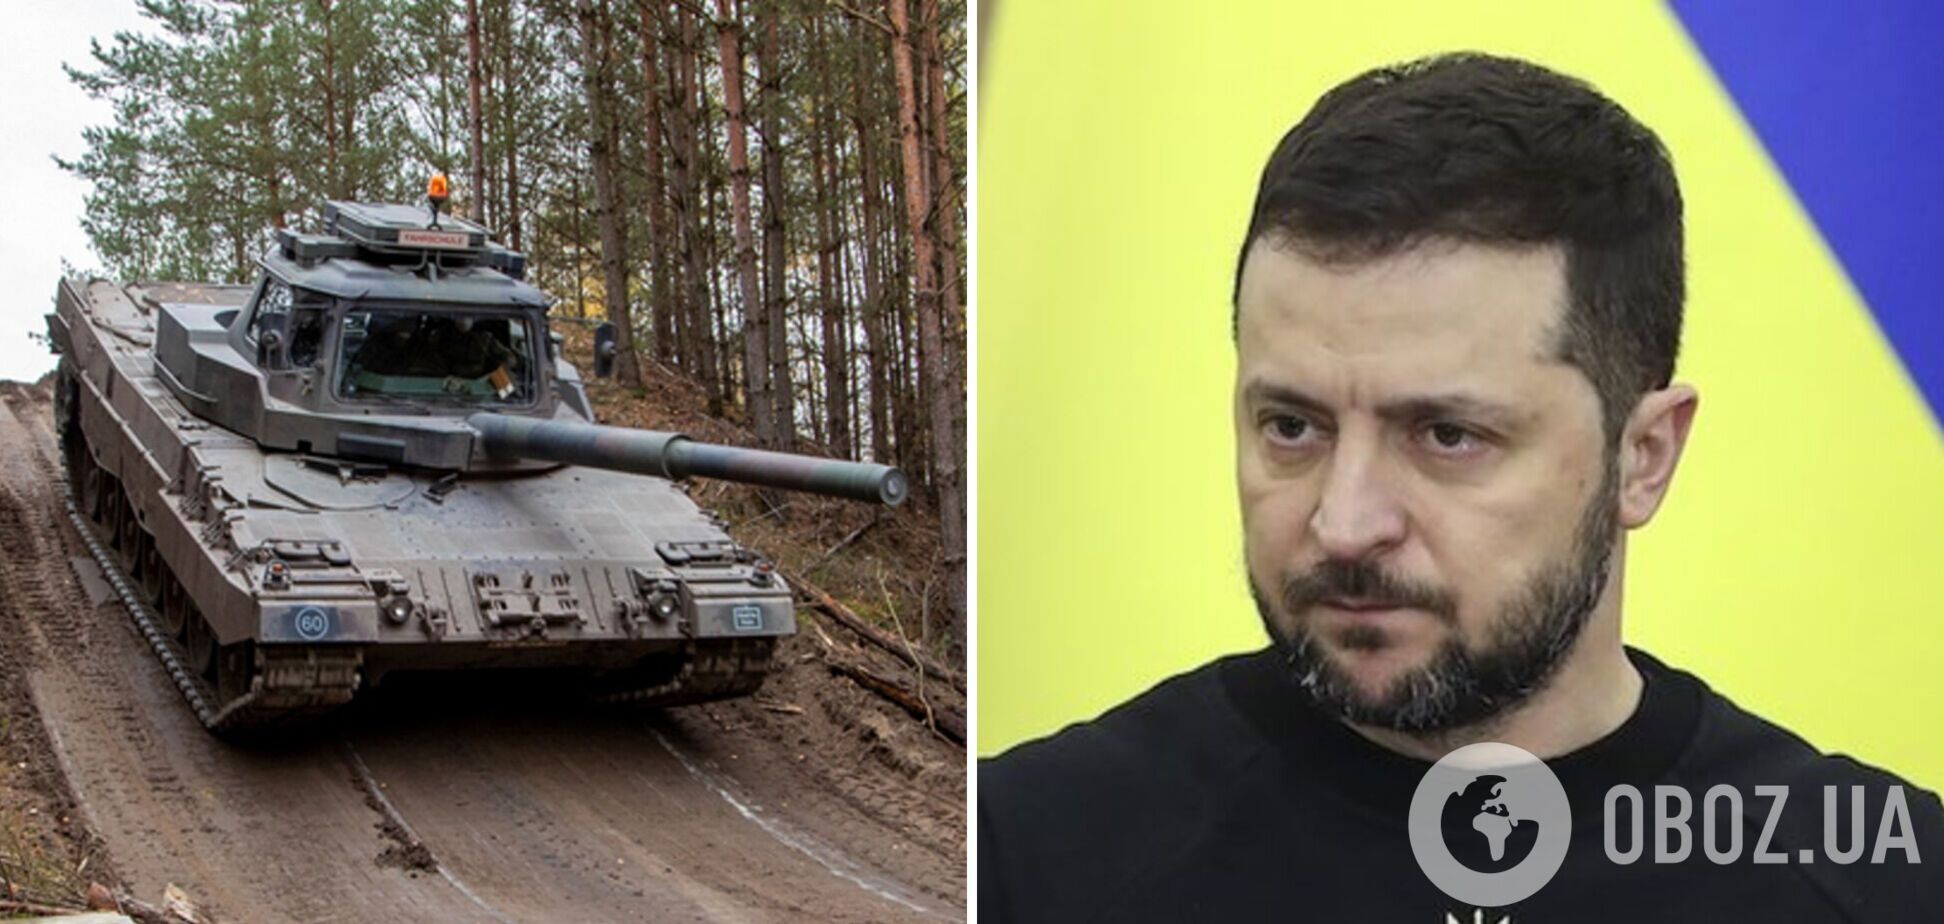 Сьогодні день оборонних новин для України, але за танки доведеться ще поборотися, – Зеленський про підсумки 'Рамштайну-8'